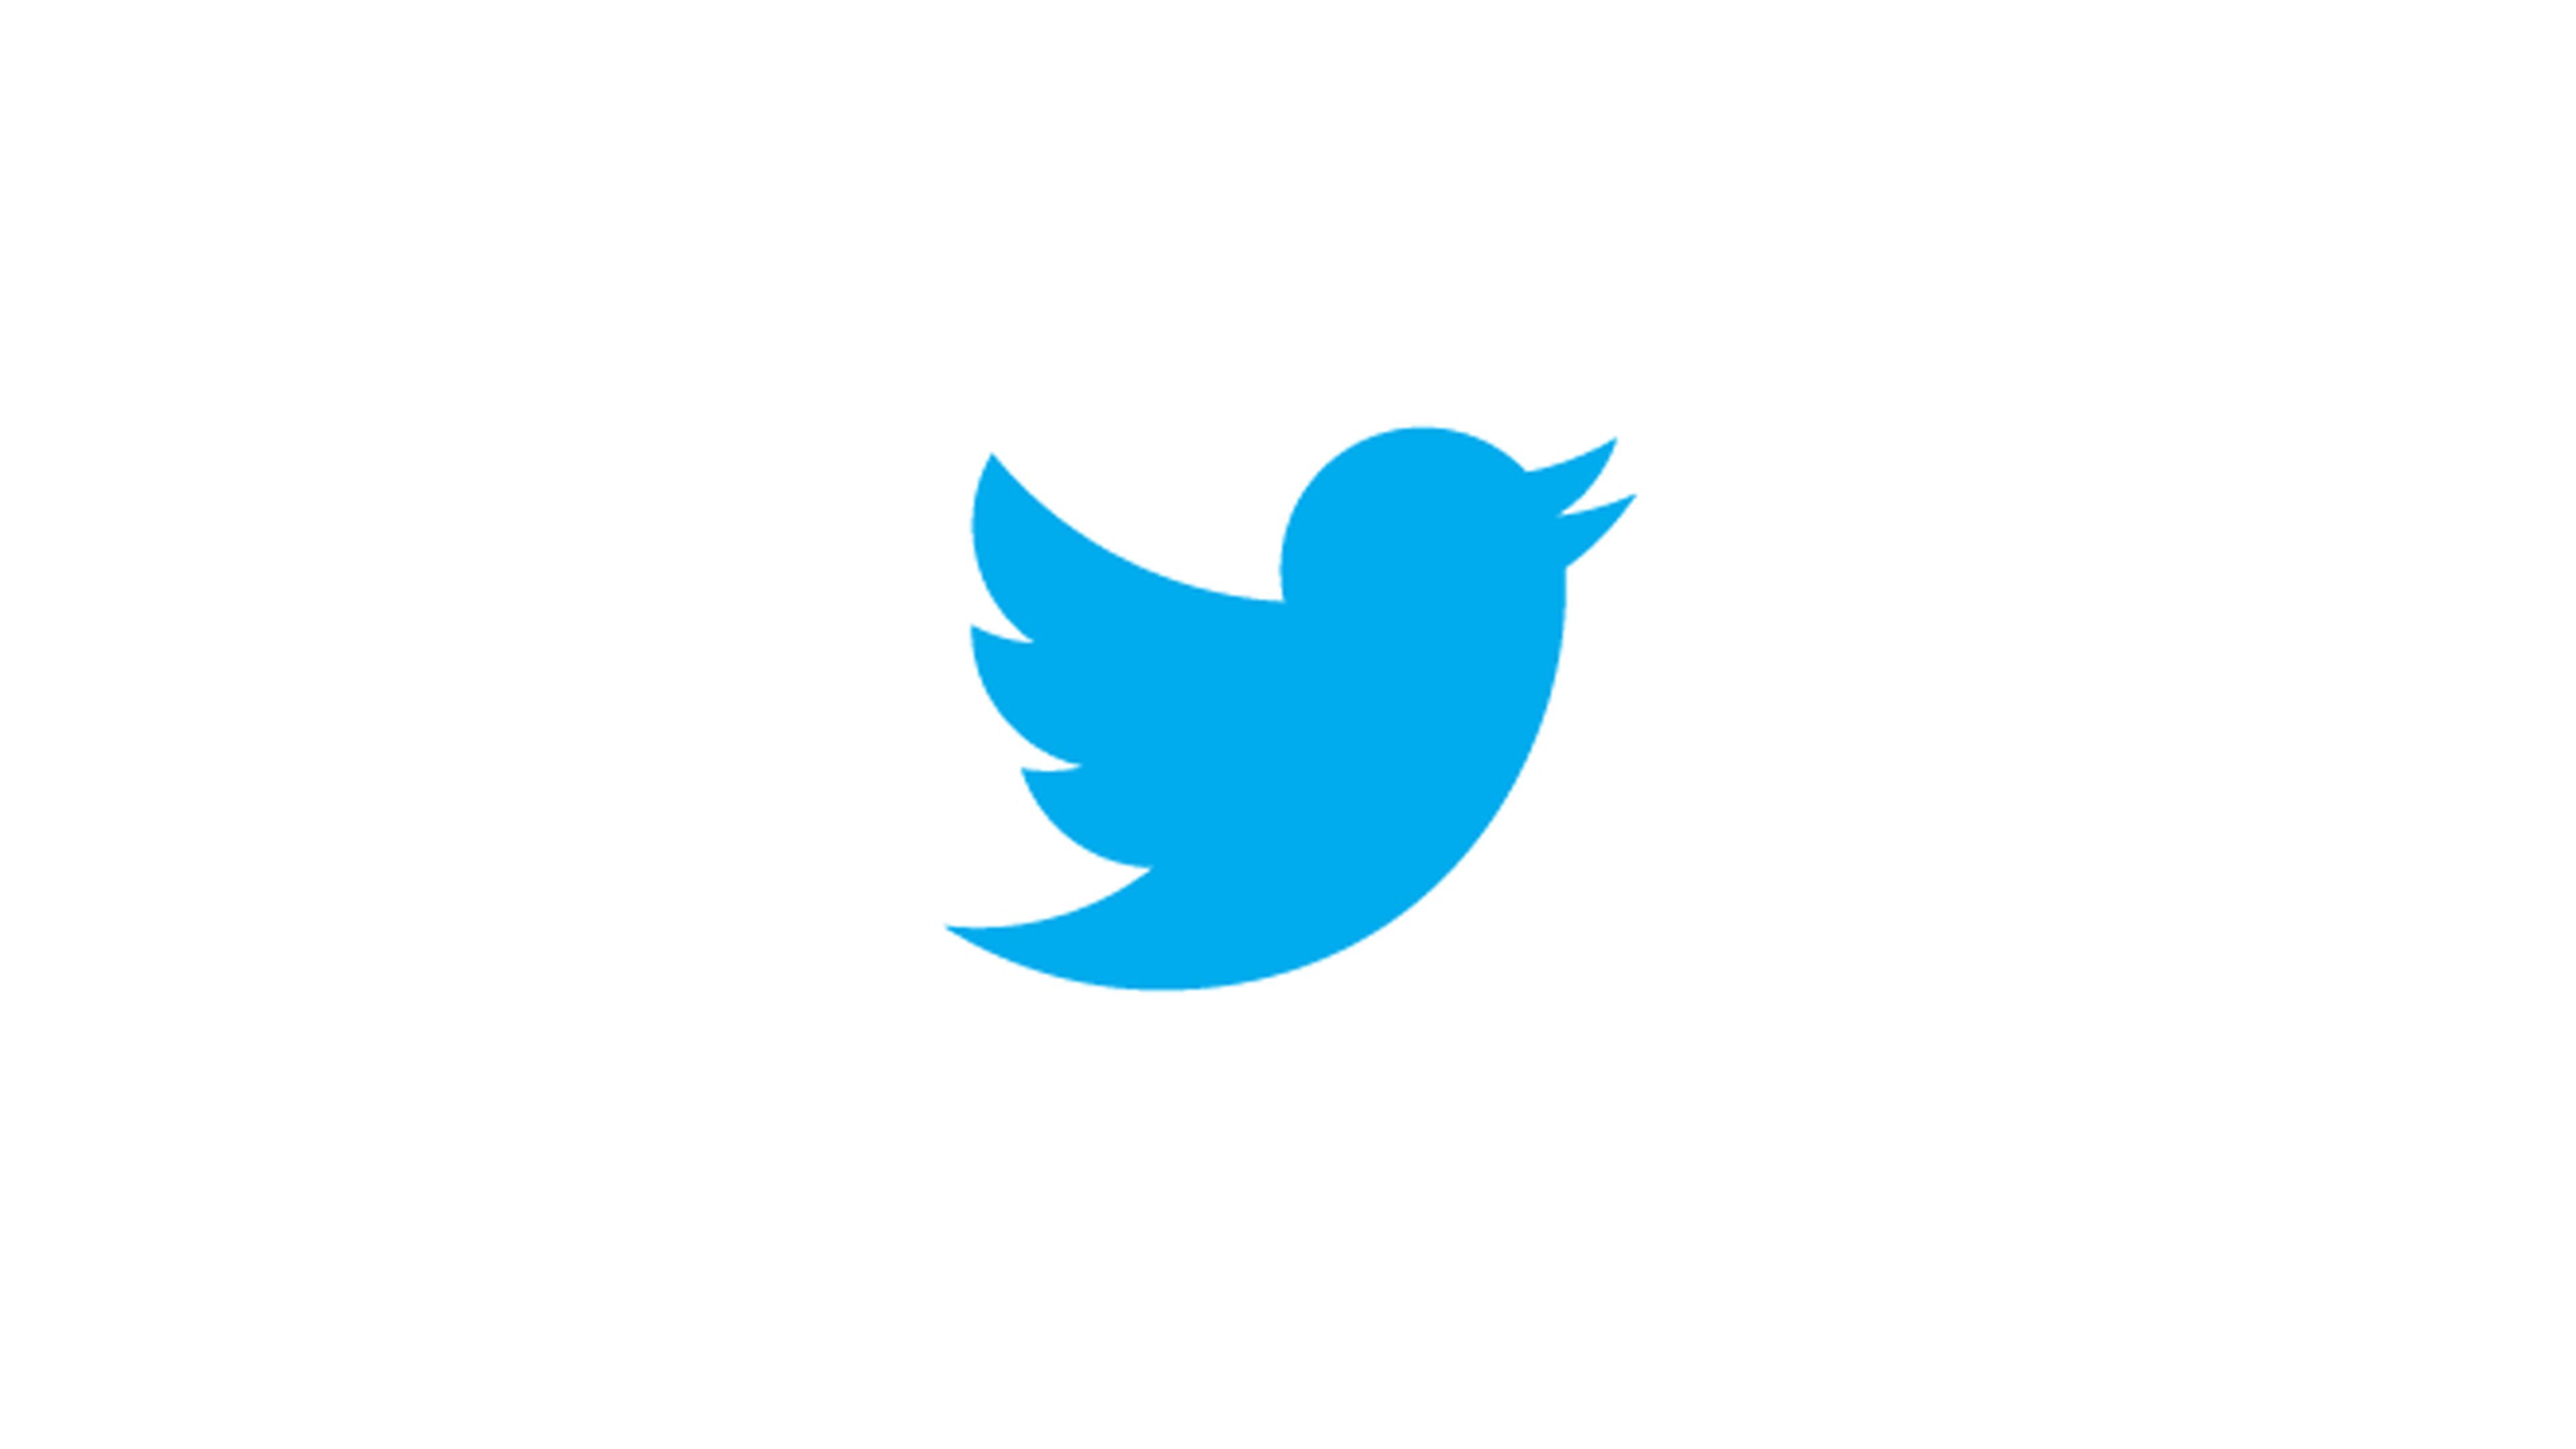 Twitter podría eliminar el límite de 140 caracteres